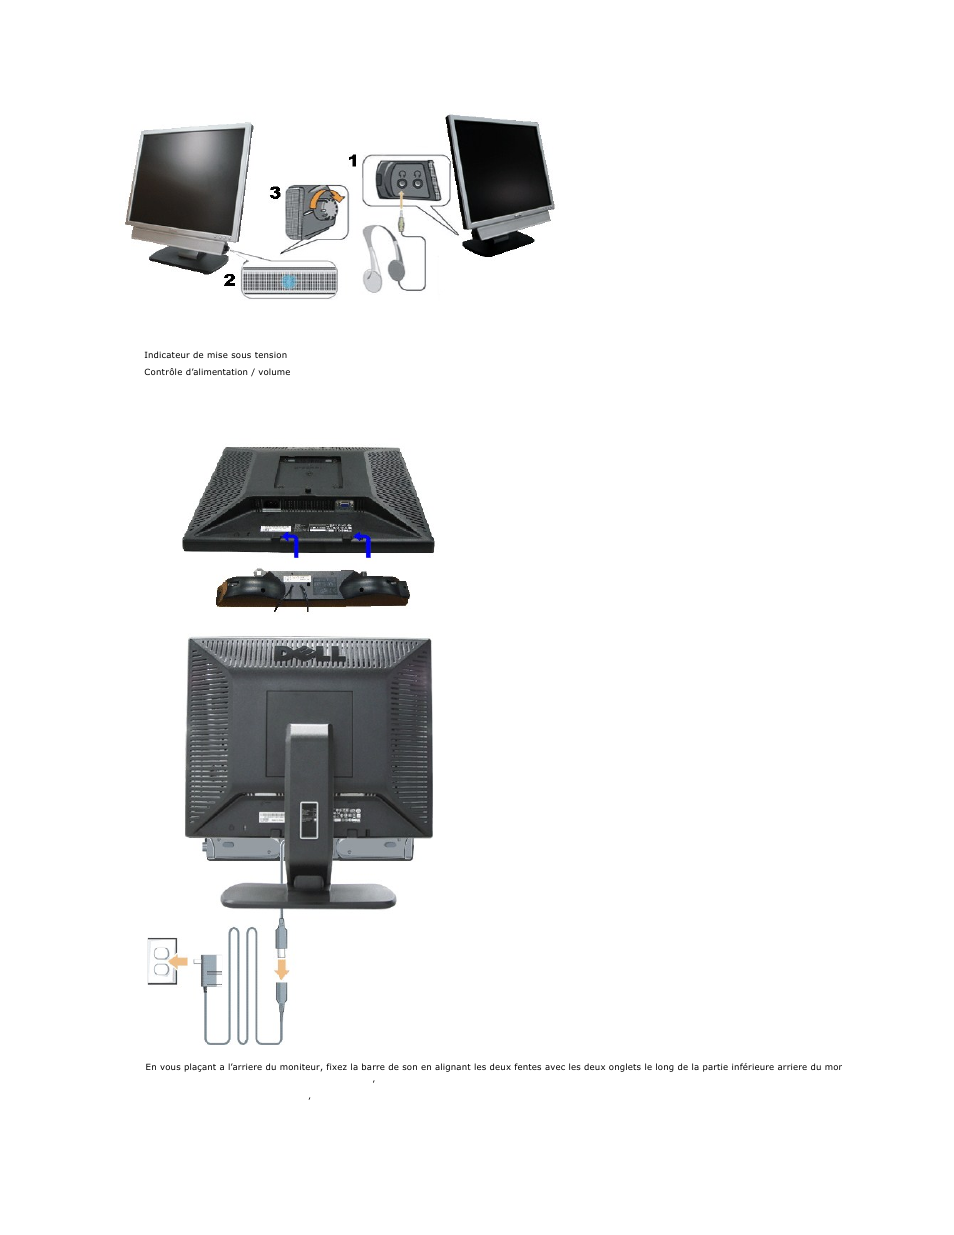 Fixation de la barre de son au moniteur | Dell SE197FP Monitor Manuel  d'utilisation | Page 24 / 30